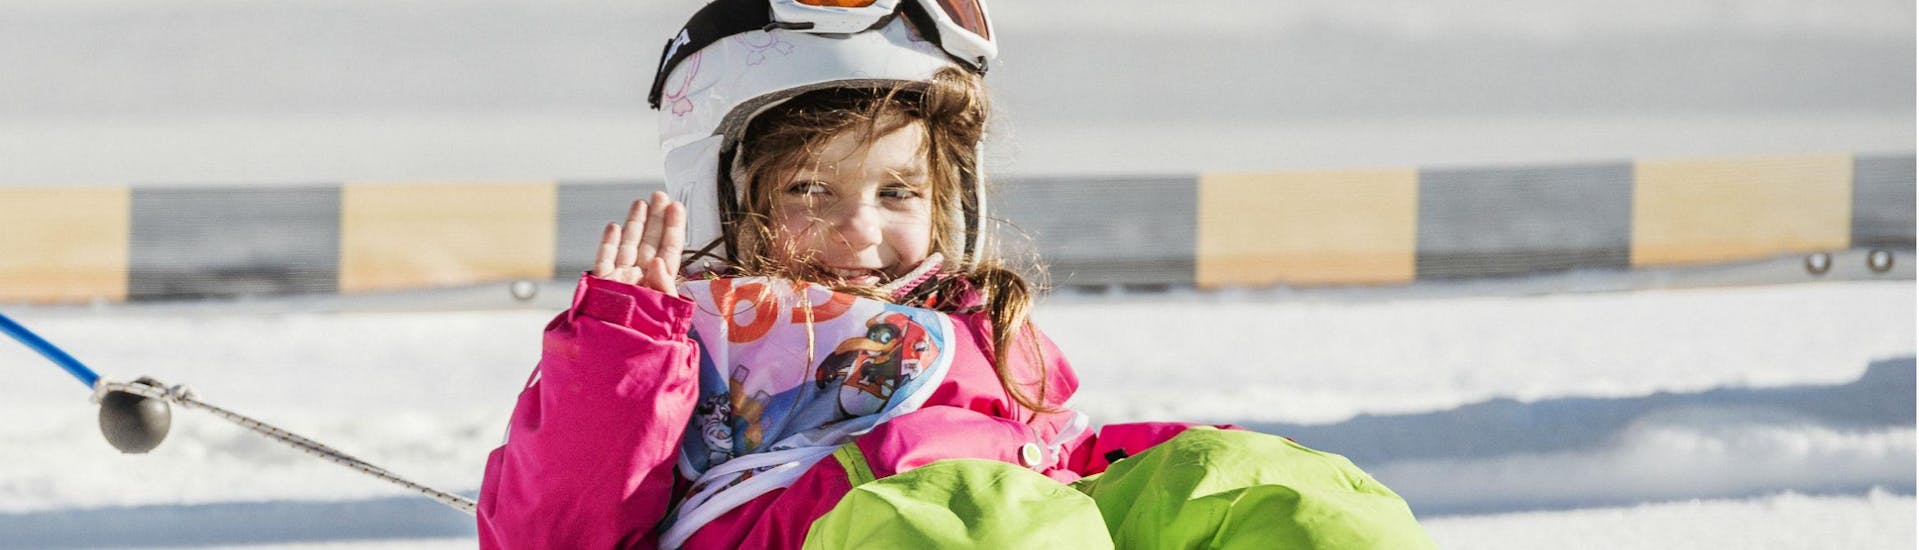 Une petite fille dans le jardin d'enfants de l'école de ski Busslehner Achenkirch pendant les cours de ski pour enfants "BOBOs Miniclub".